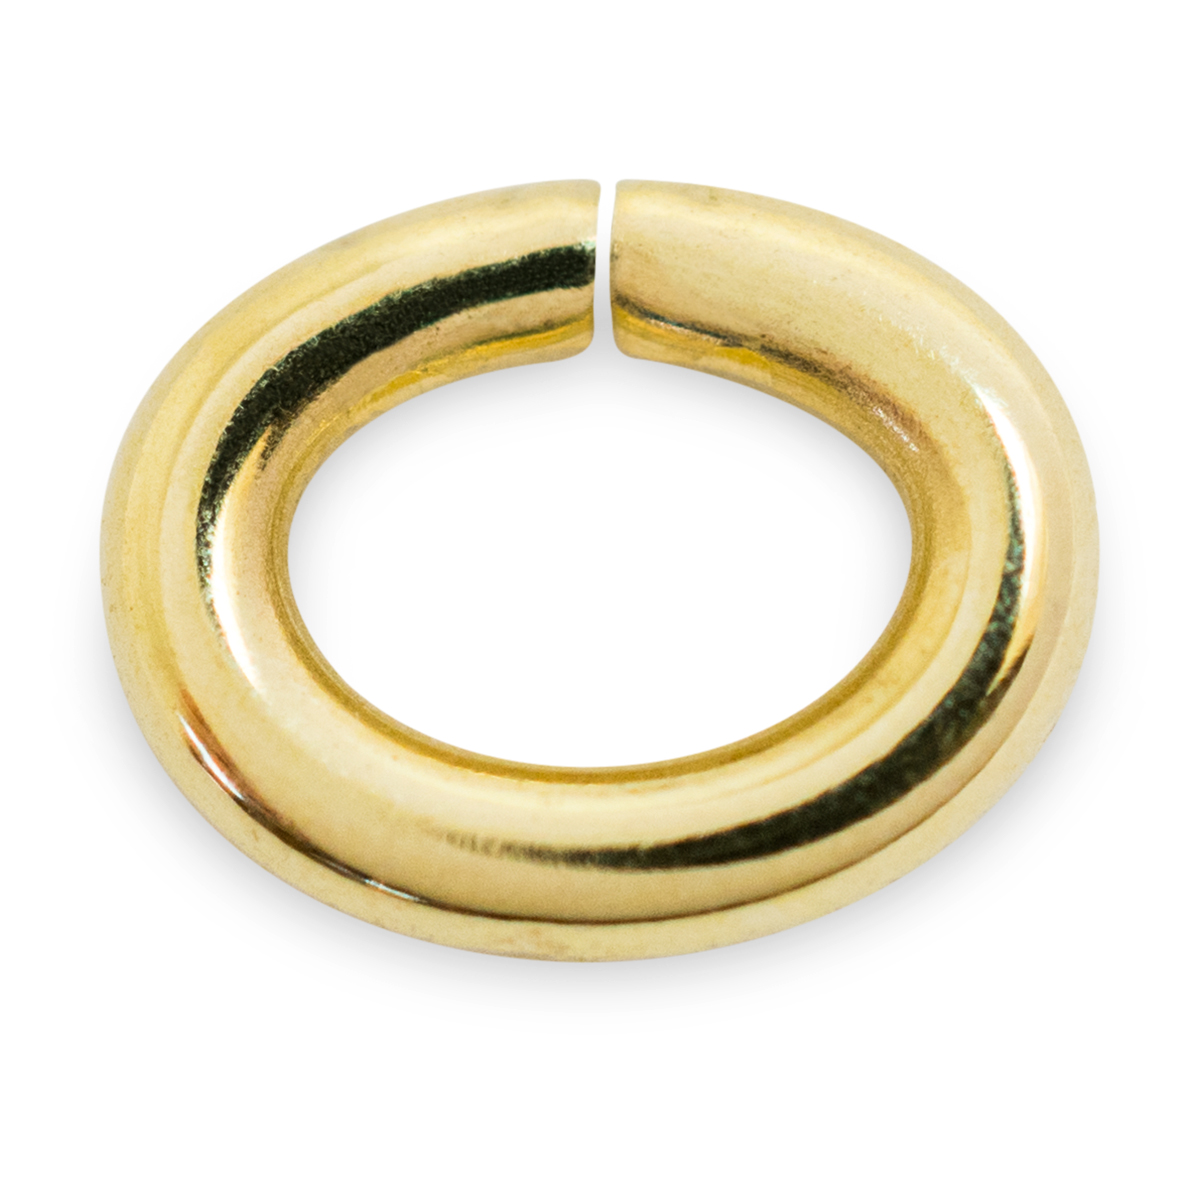 Binderinge, oval, 585/- Gelbgold, Ø 7 mm, Stärke 1,1 mm